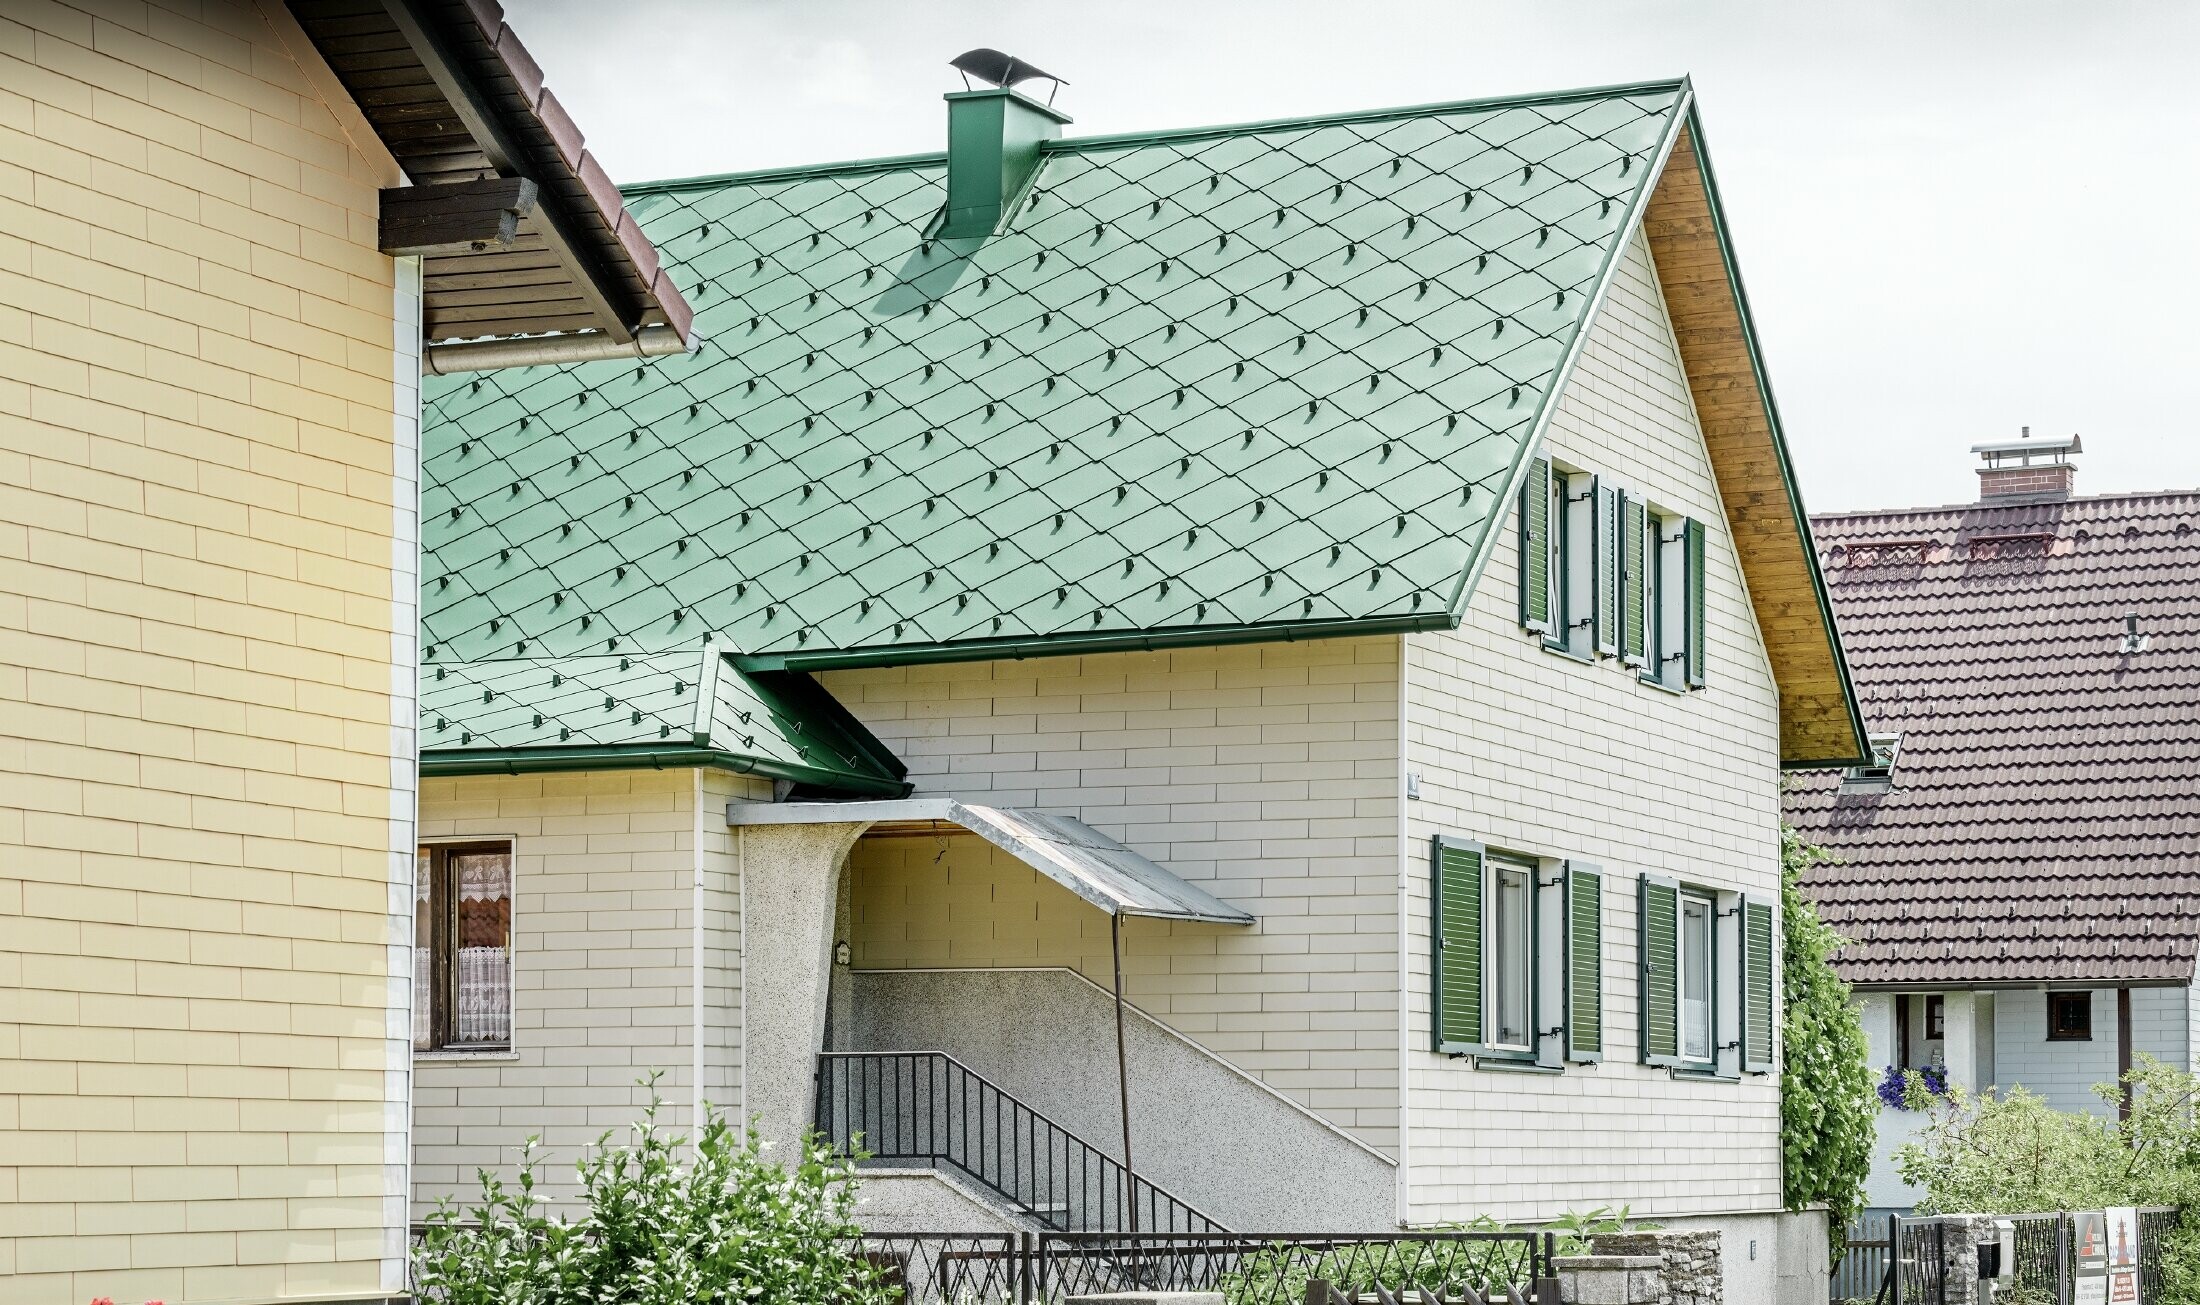 Maison individuelle classique au toit à deux versants dotée de volets verts — Couverture de toit en aluminium de couleur vert mousse